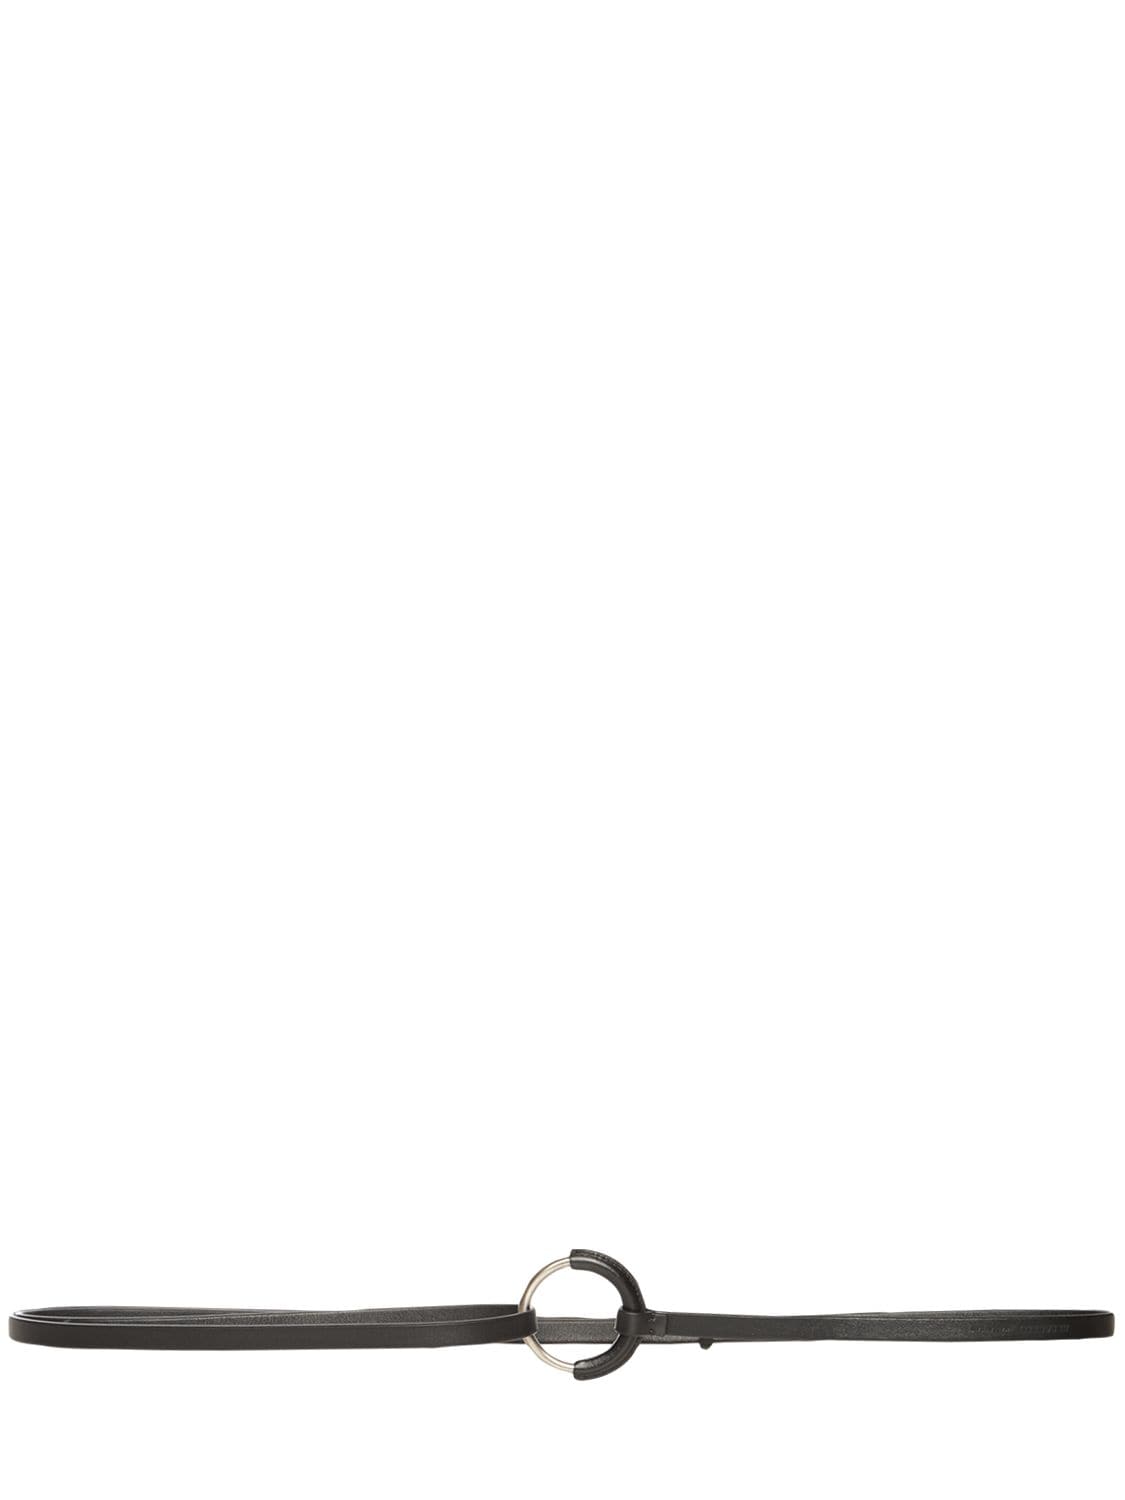 Jil Sander 1cm Ring Leather Belt In Black